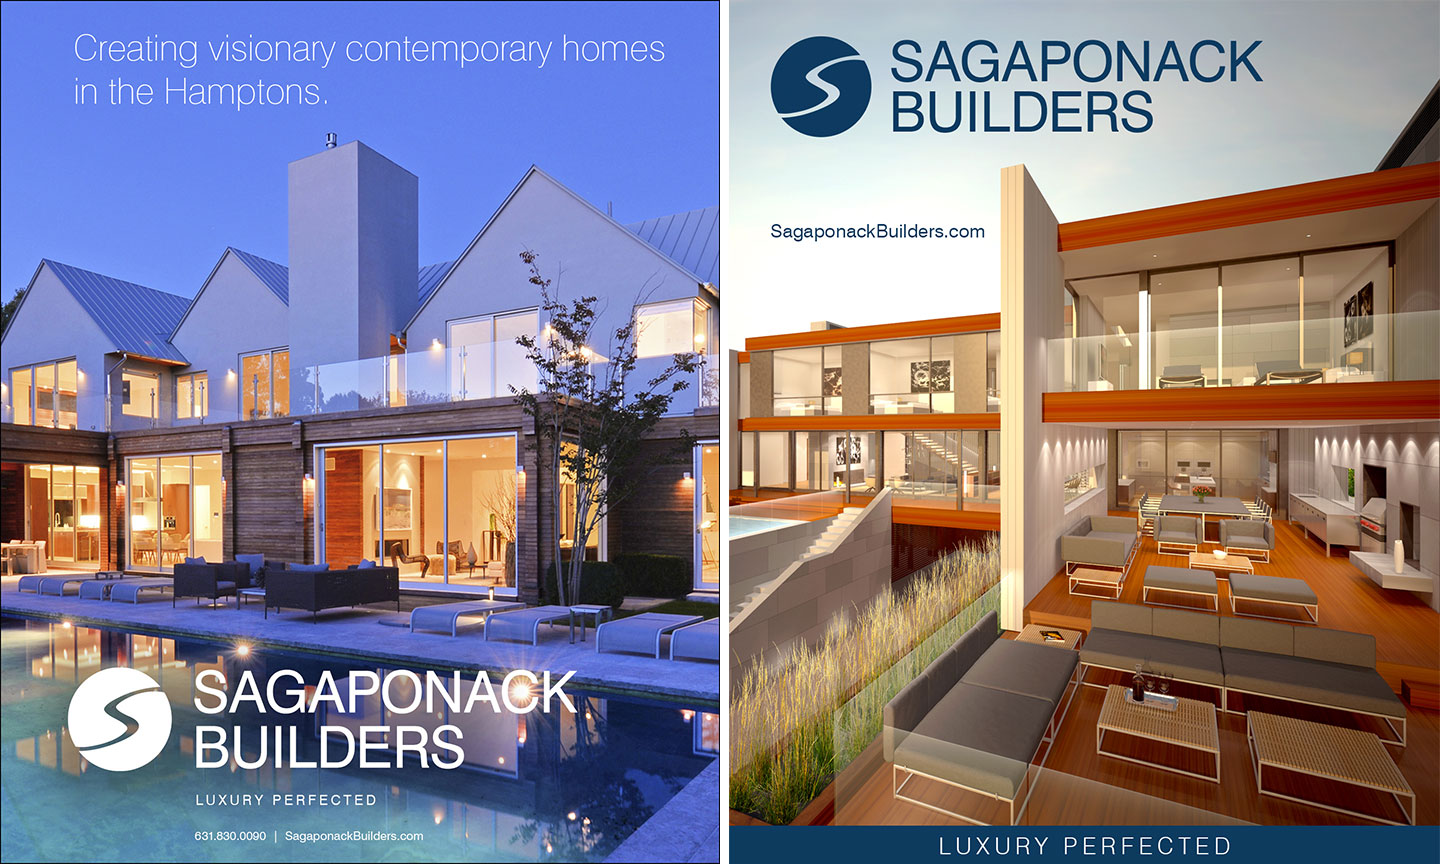 Sagaponack Builders